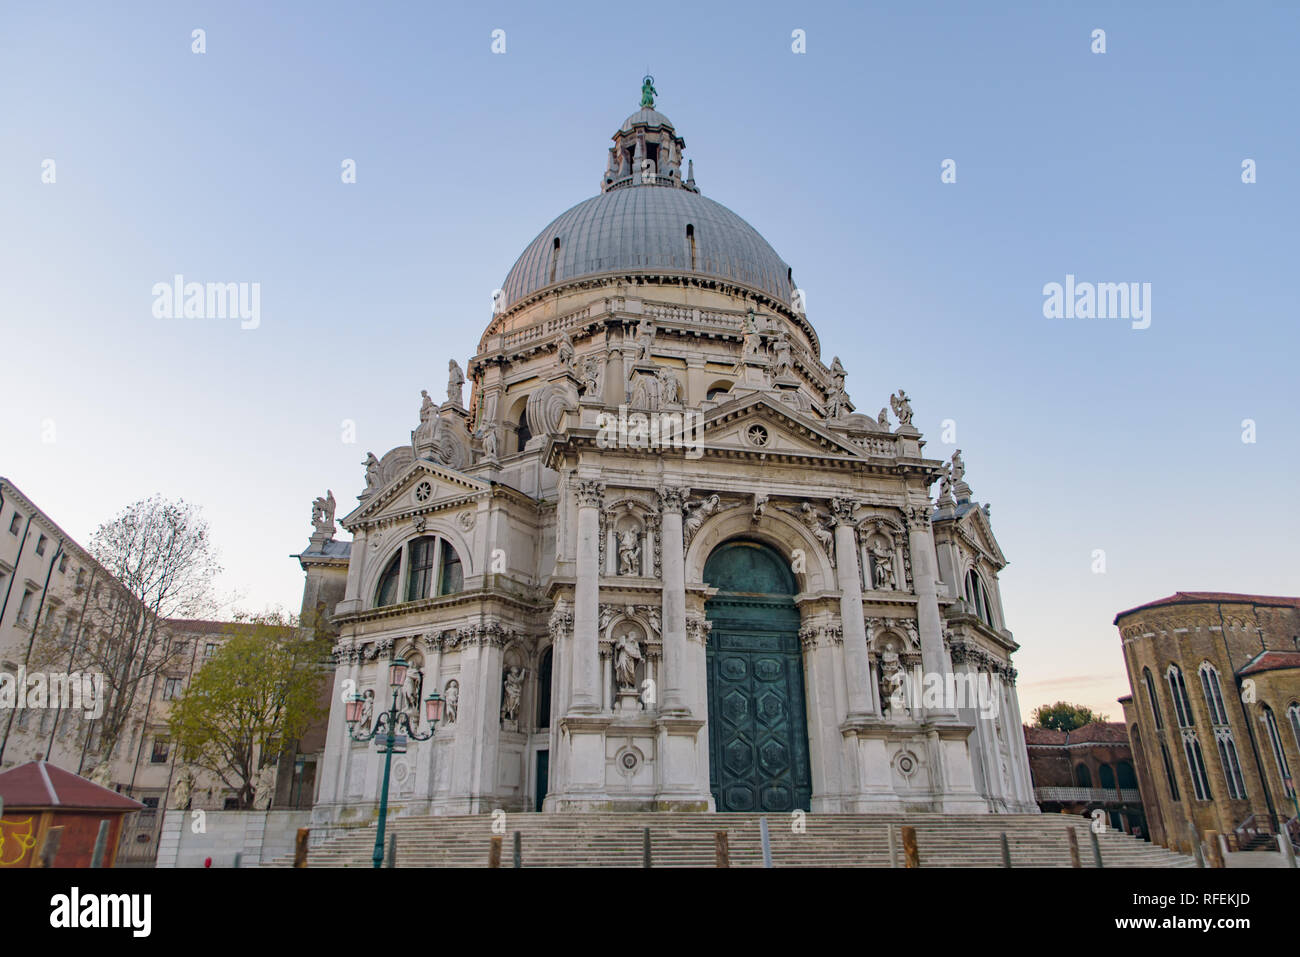 Santa Maria della Salute (Saint Mary of Health), a Catholic church in Venice, Italy Stock Photo